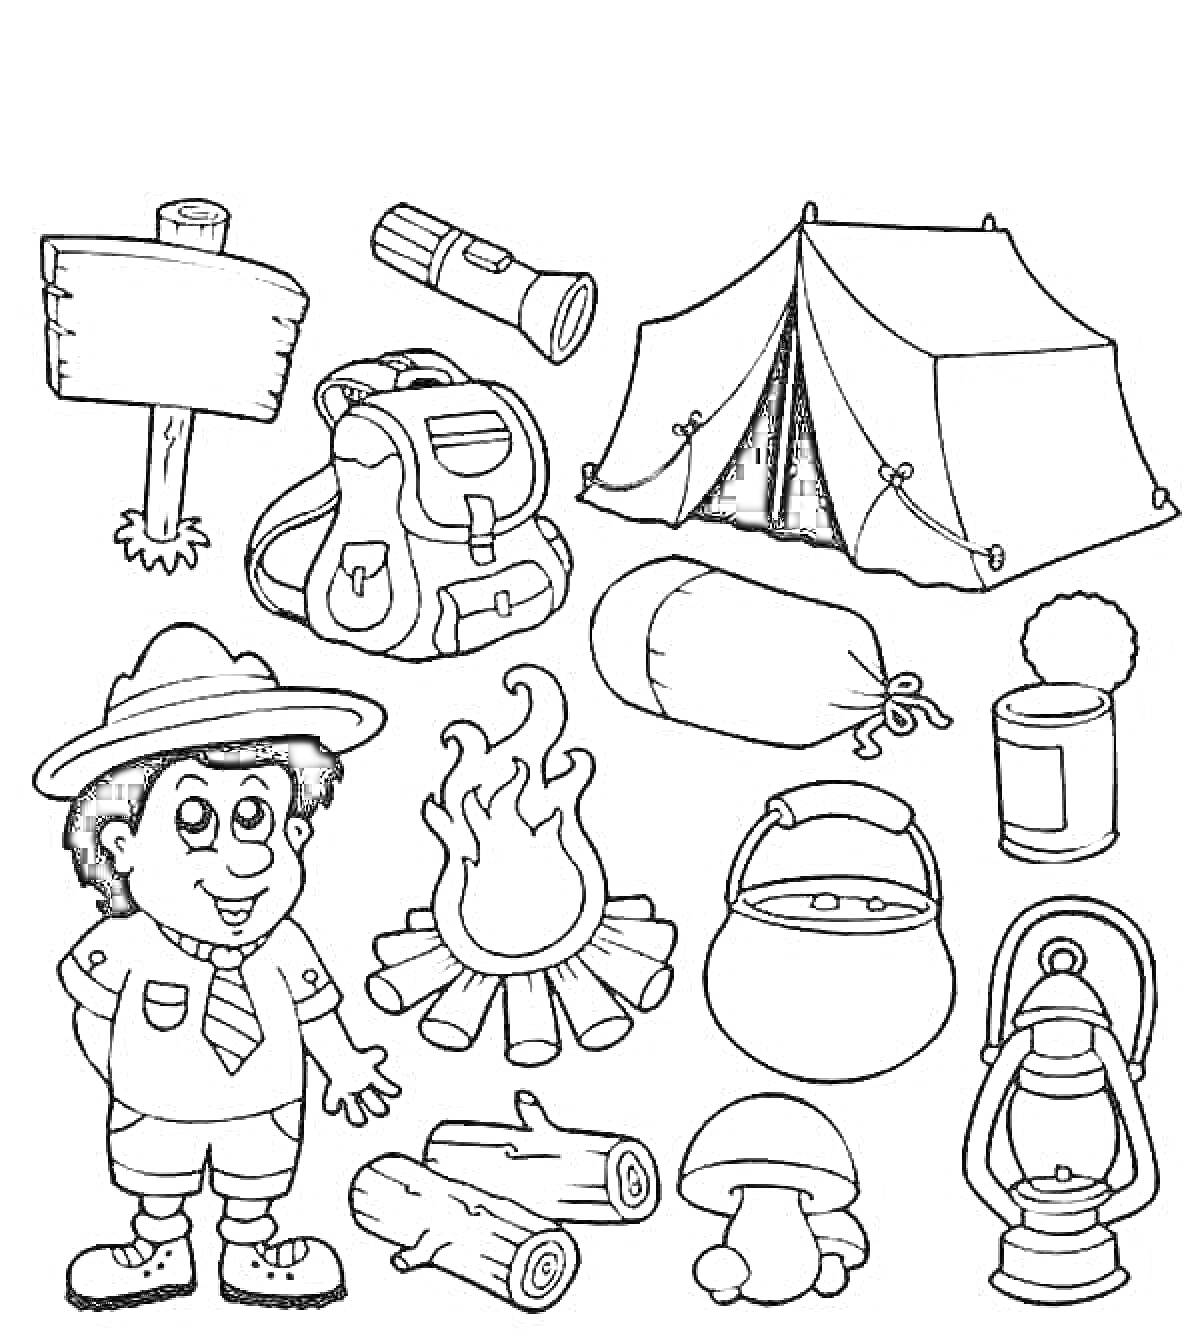 Раскраска Поход в лес с мальчиком, палаткой, костром, фонариком, рюкзаком, спальным мешком, консервной банкой, казаном, лампой, поленами, грибом и указателем